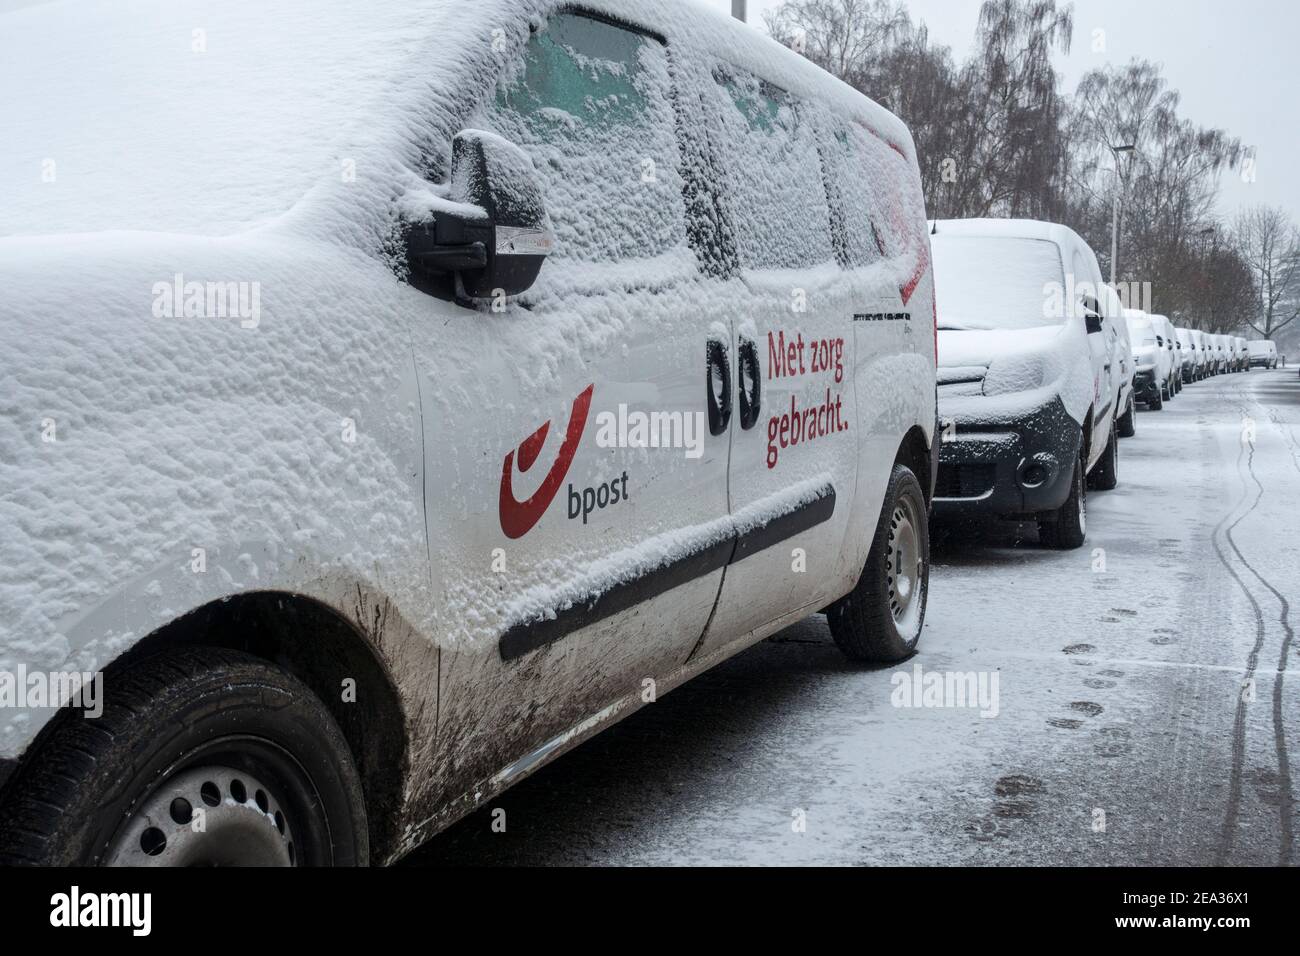 Pare-brise / pare-vent et vitres de voiture des véhicules de livraison Belge Bpost garés couverts de neige par temps froid en hiver, Belgique Banque D'Images